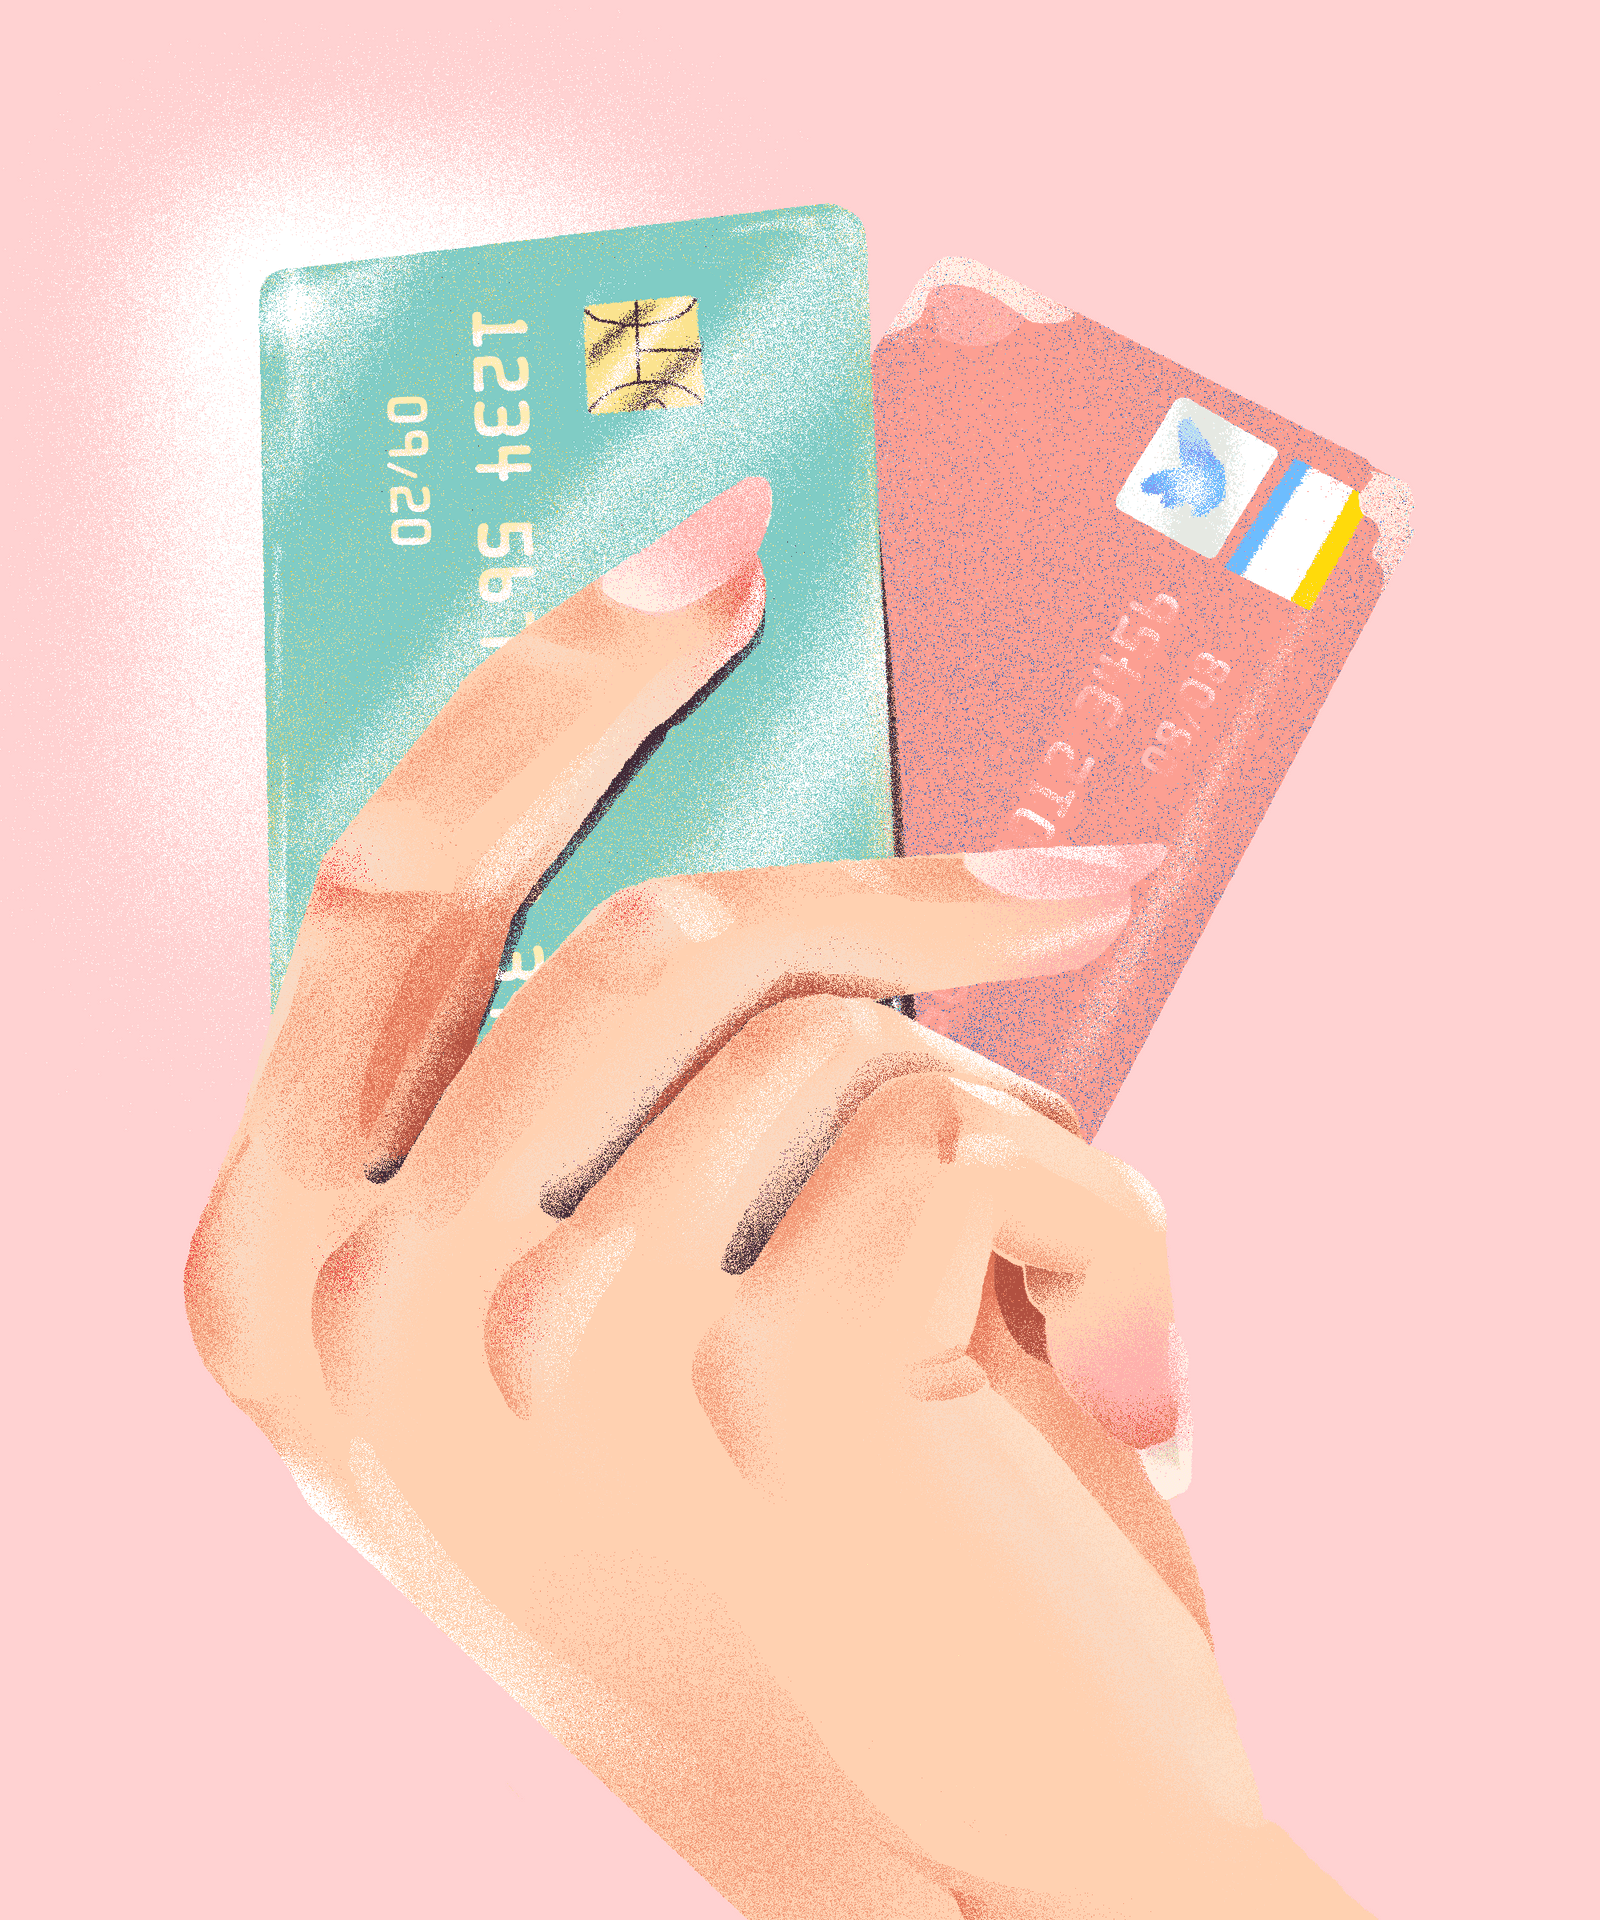 Enhand Som Håller I Ett Kreditkort Och Ett Bankkort